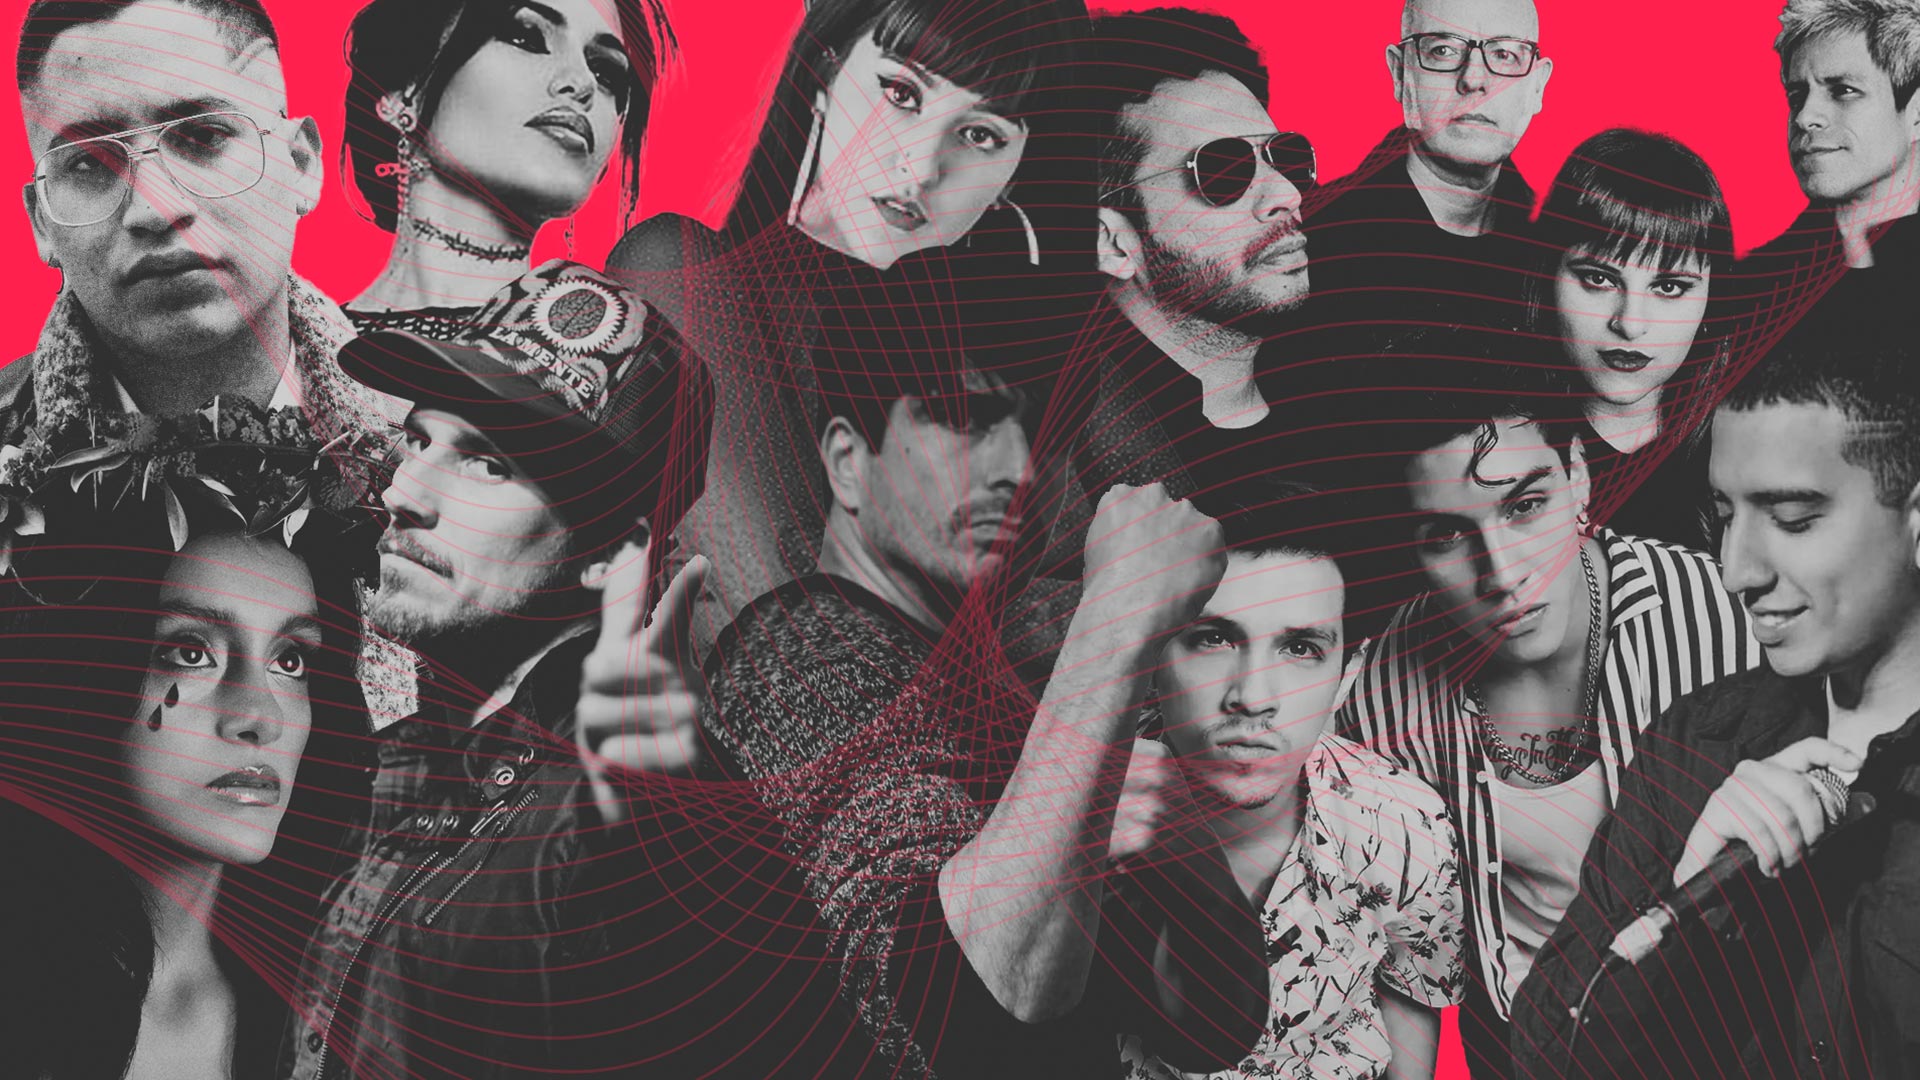 La Mente, Marié y otros artistas peruanos con nueva música en un collage con fondo rojo